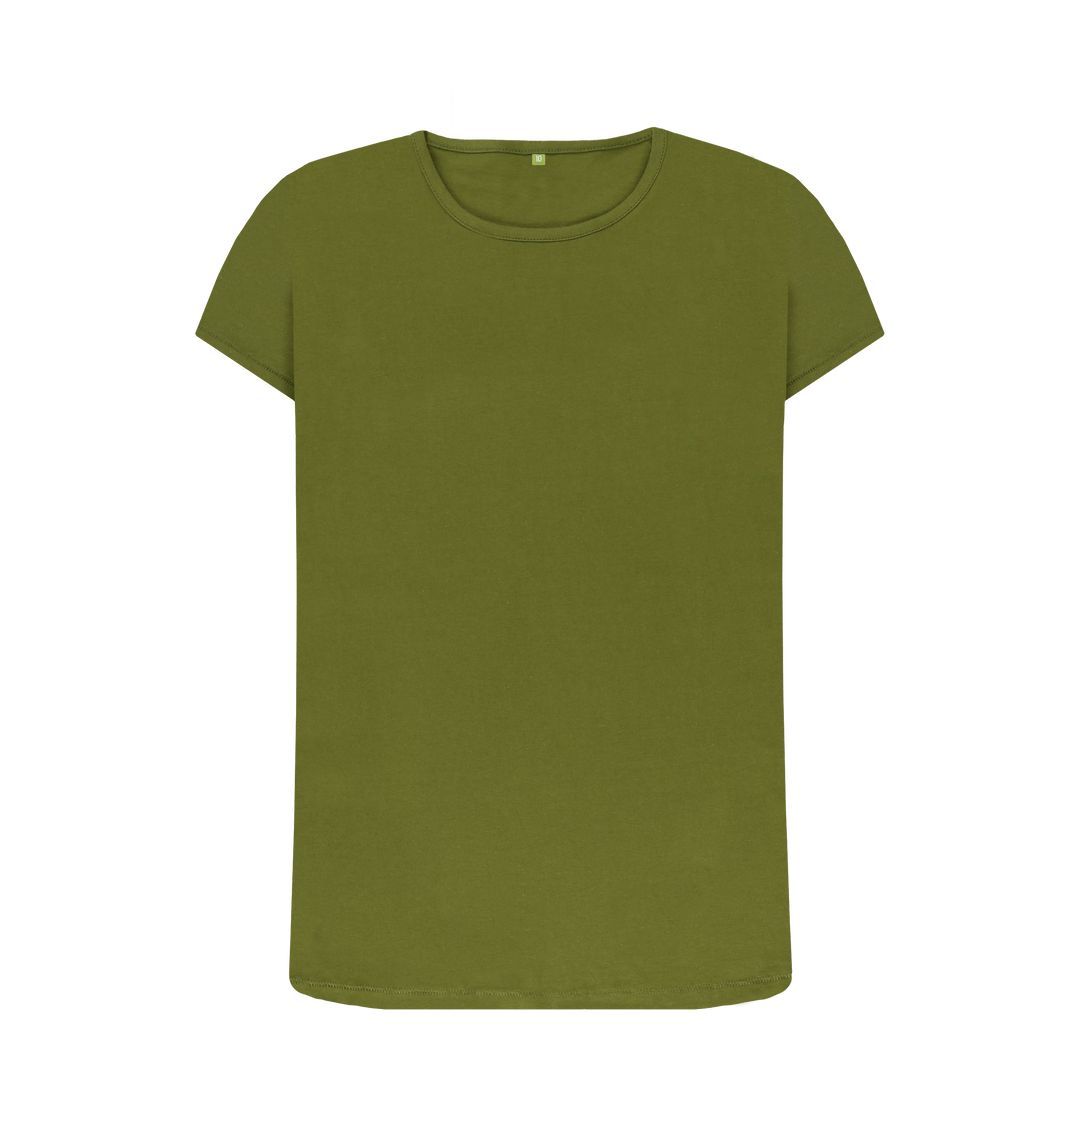 Moss Green Women's organic cotton crew neck t-shirt